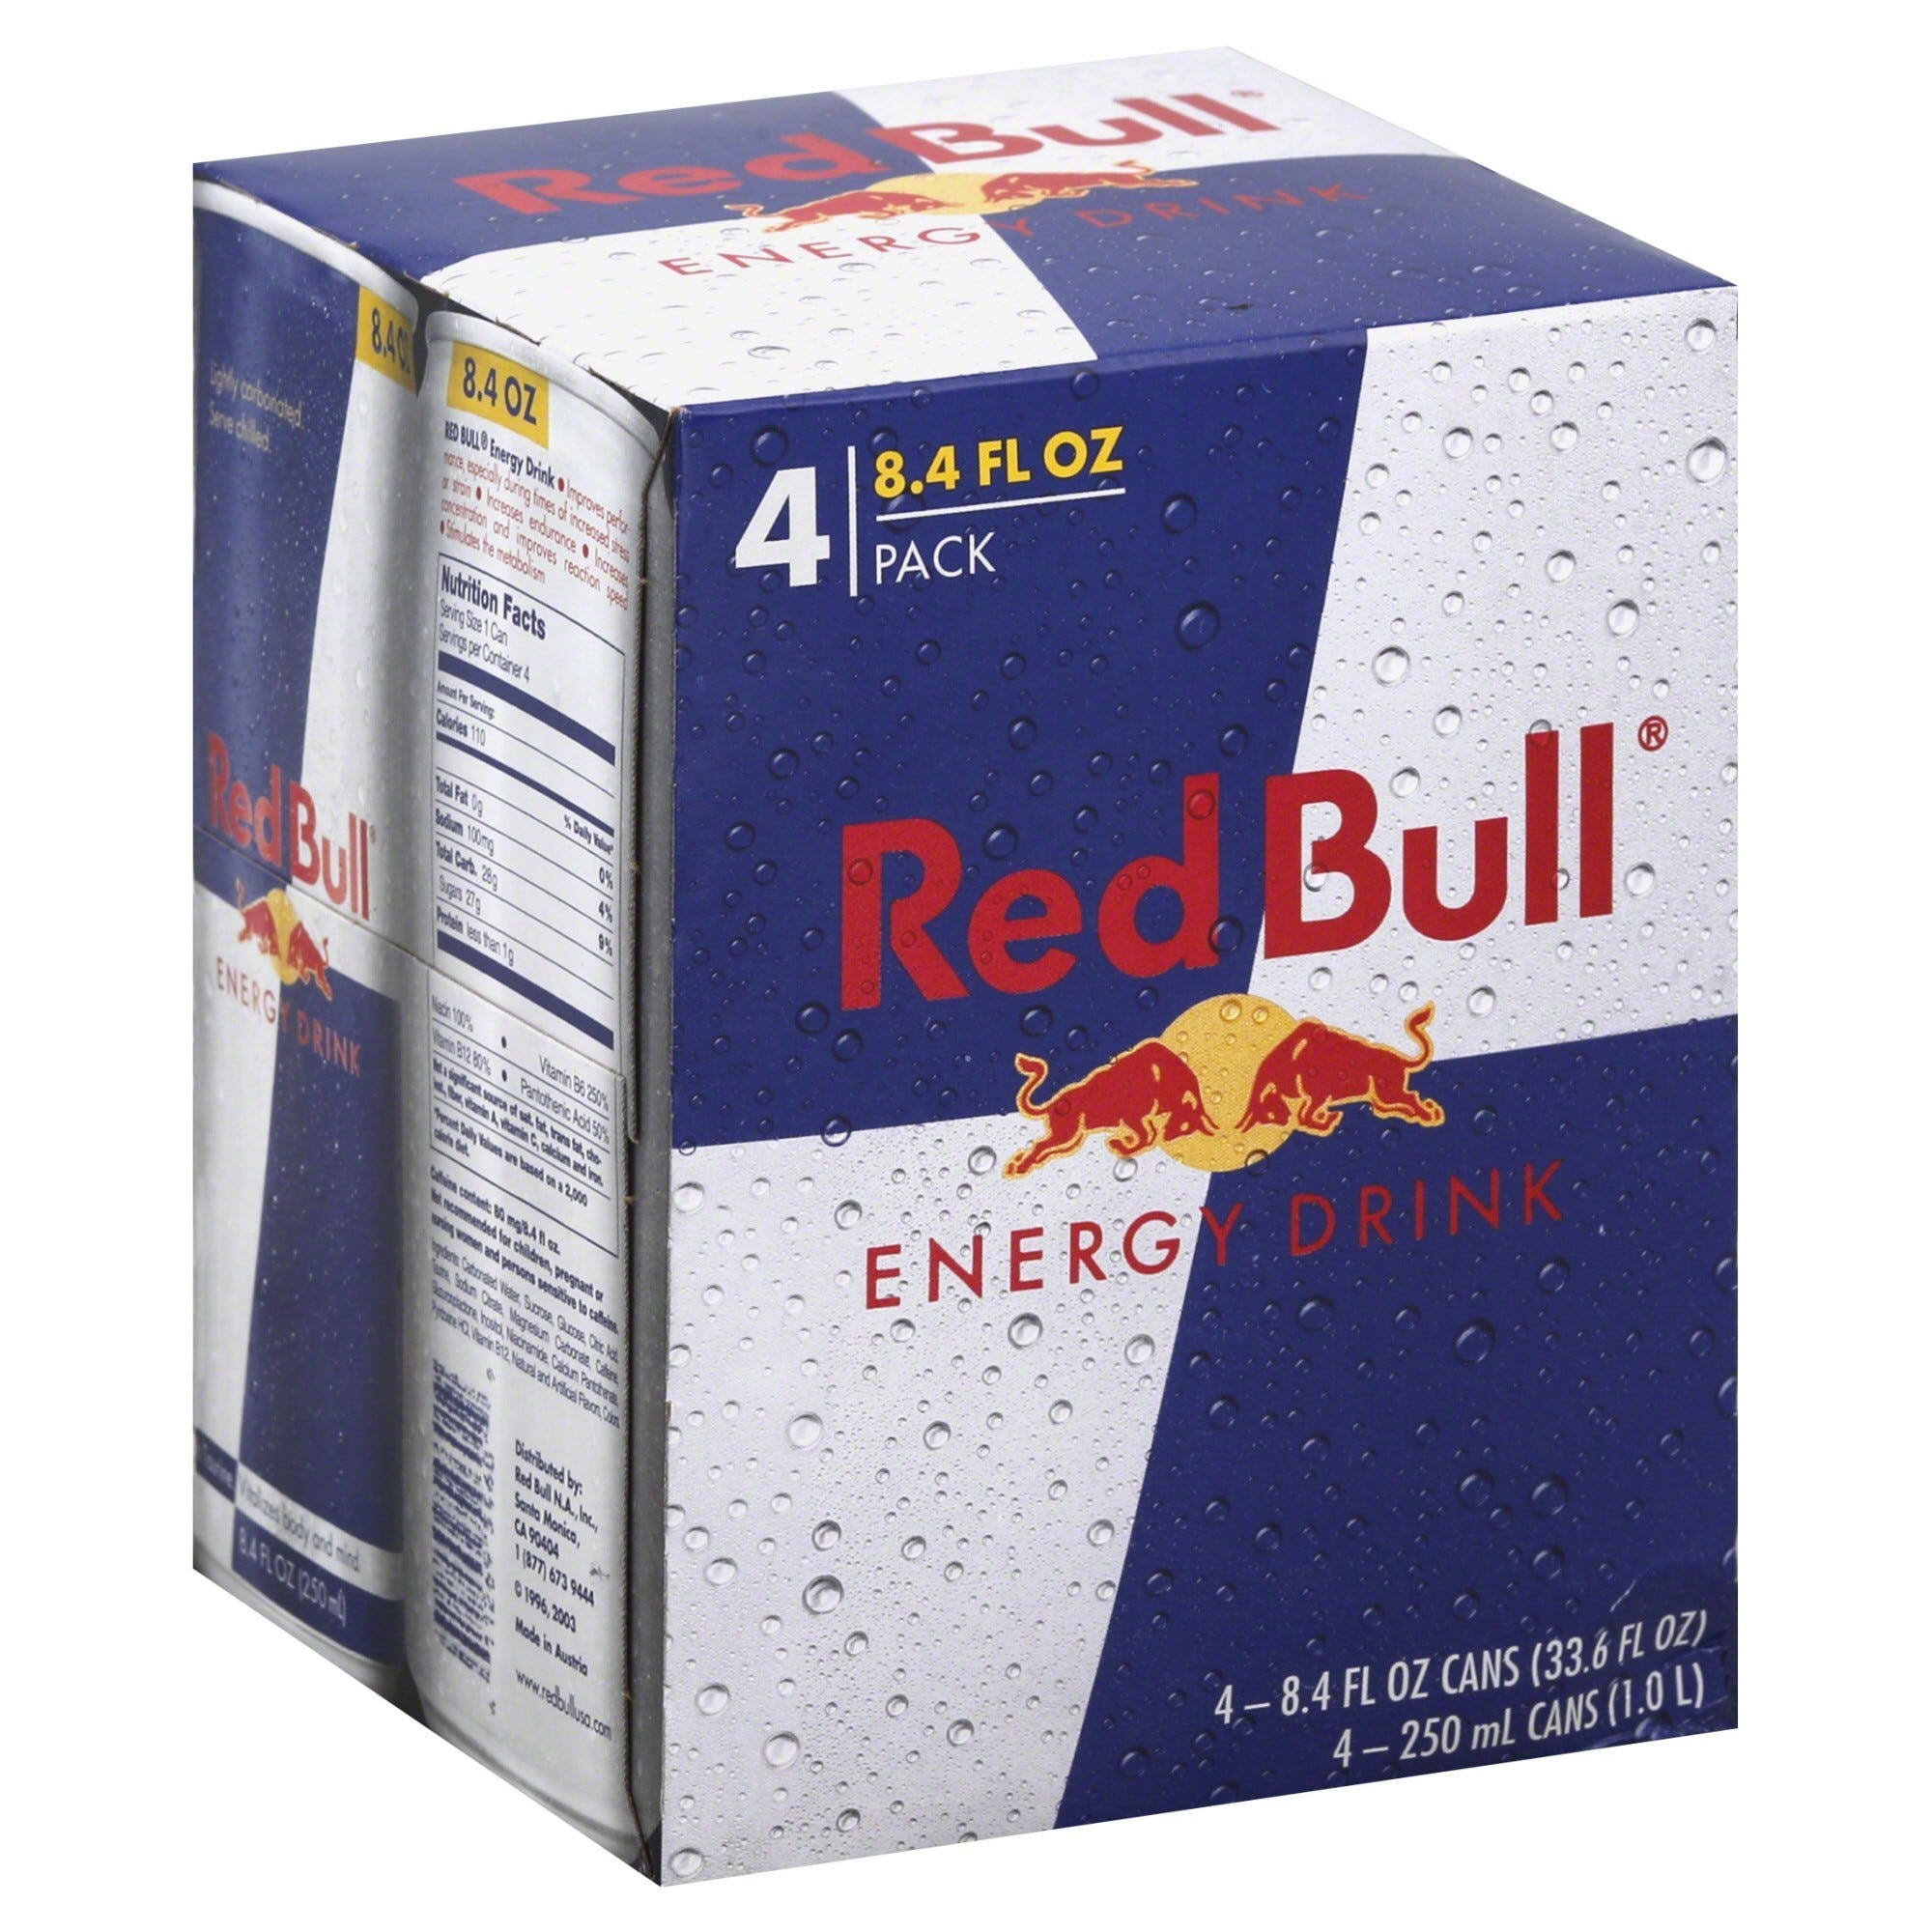 Red Bull Energy Drink - 8.4 fl oz, 4 pack